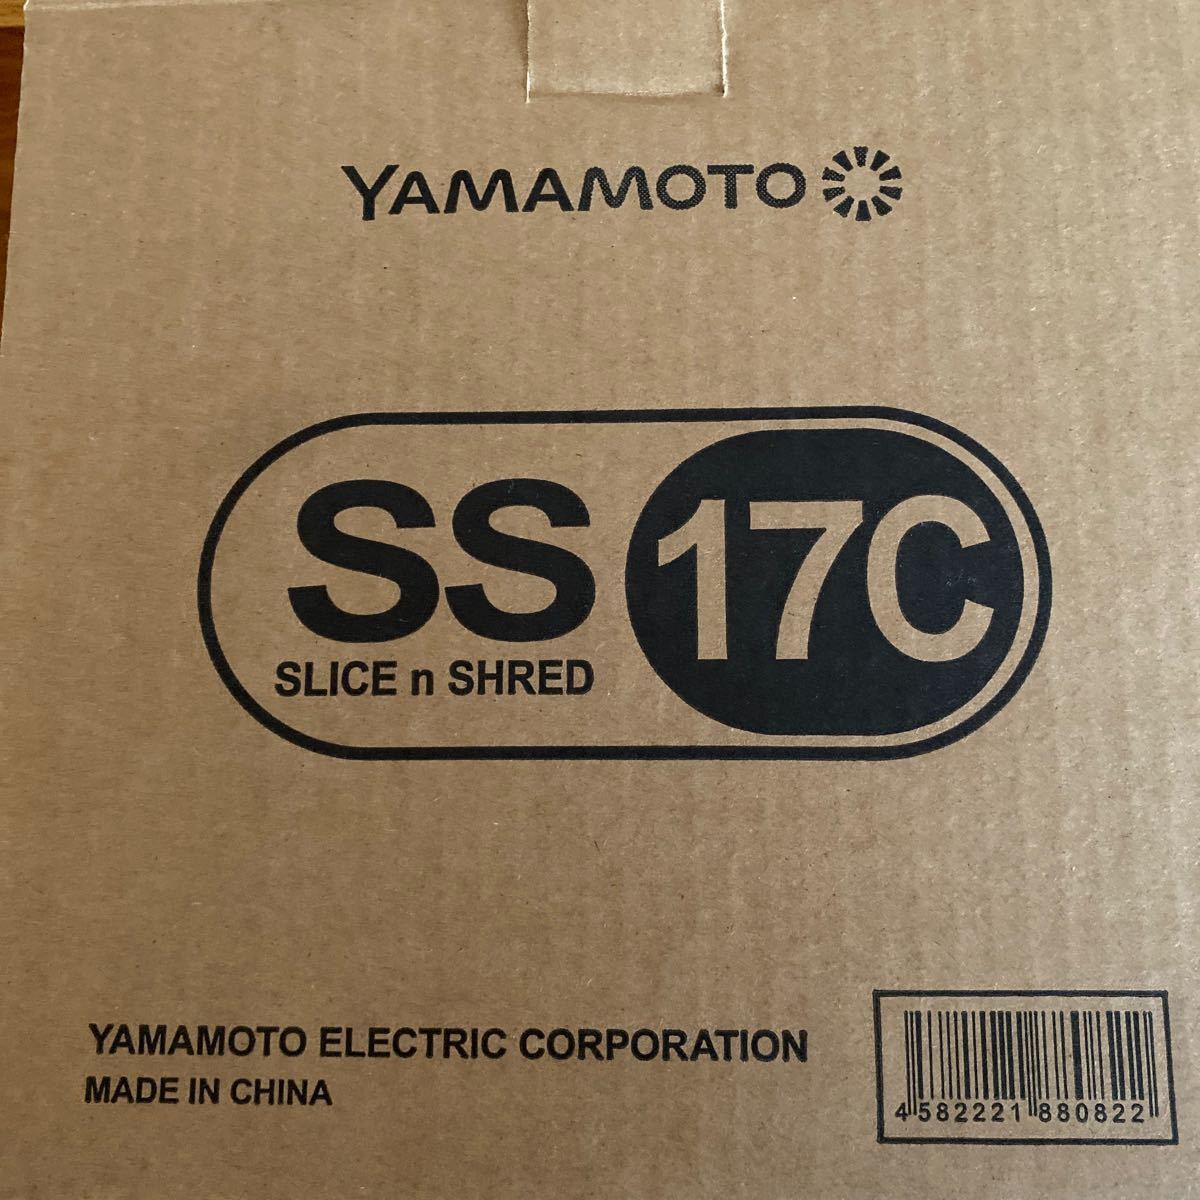 yamamoto 山本電気　SlicerKit スライサーキット YE-SS17C 泡立てブレード付き　8月10日までの出品！